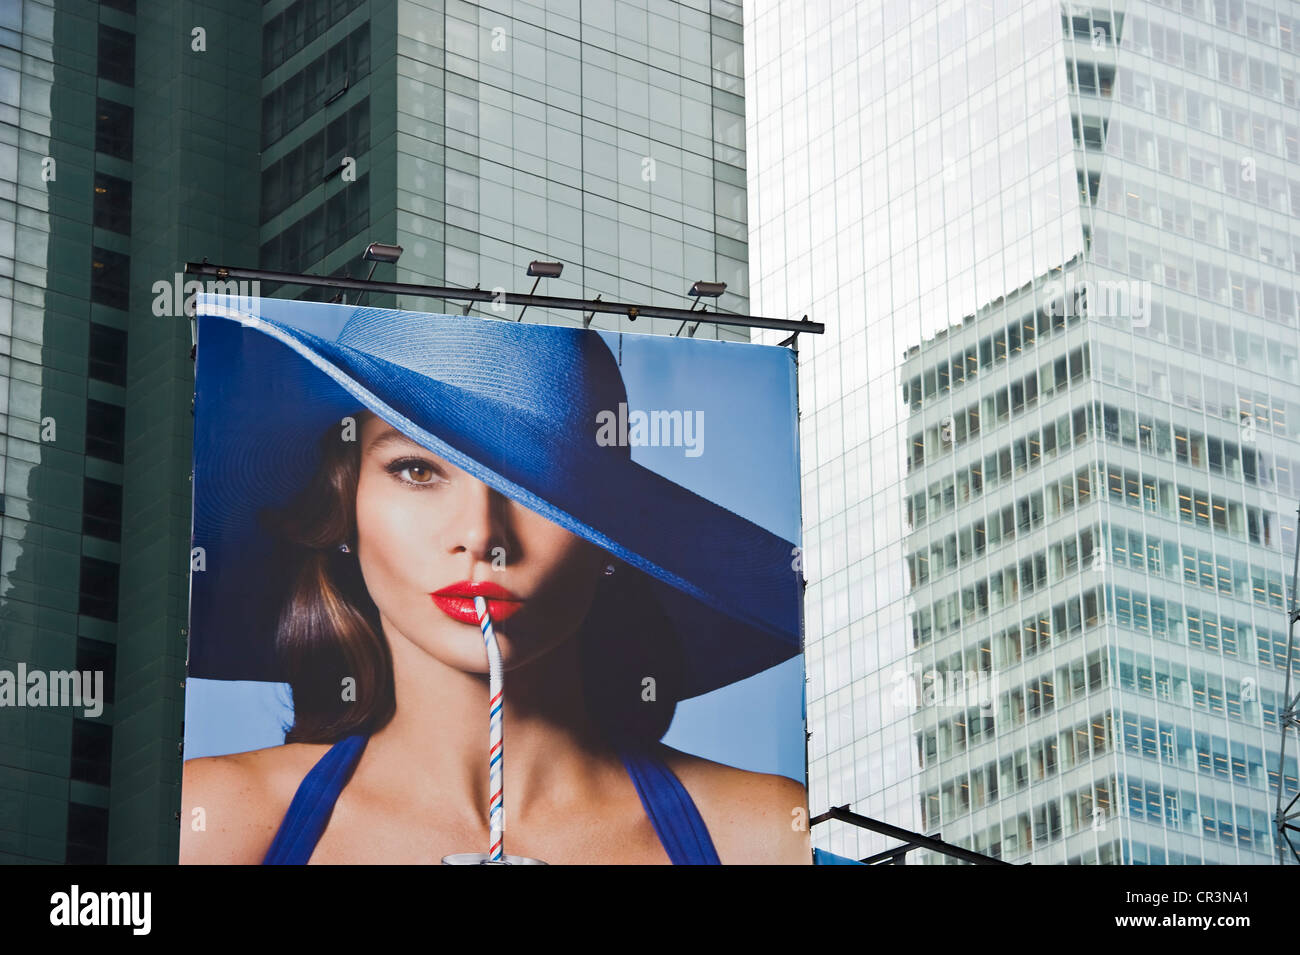 El acaparamiento de publicidad en Times Square, Manhattan, Nueva York, EE.UU. Foto de stock